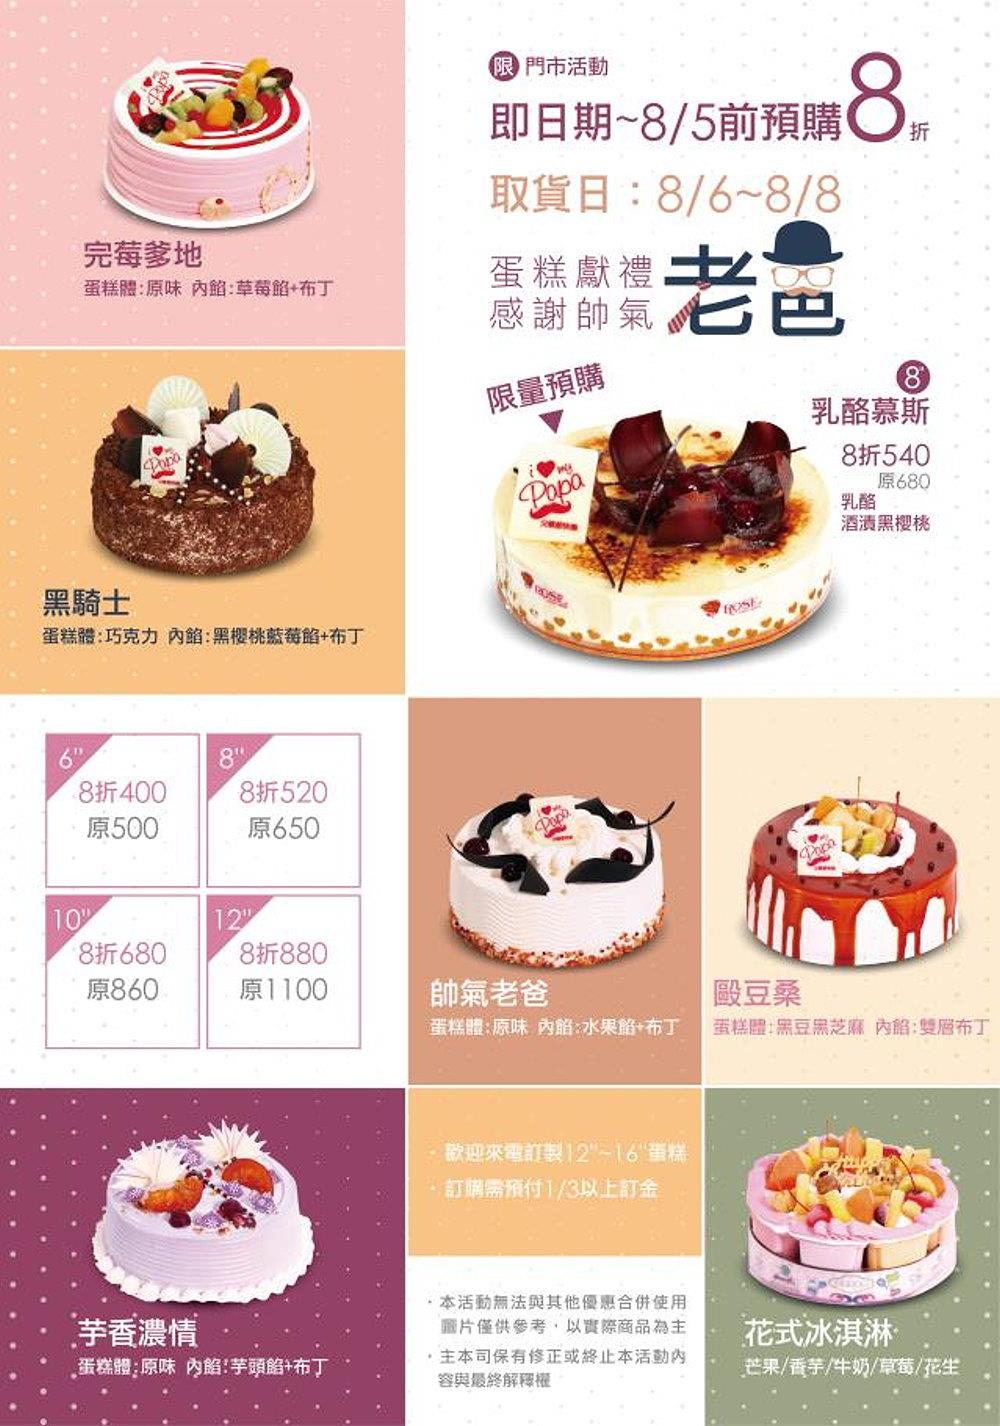 屏東東港伴手禮,父親節蛋糕預購8折優惠!